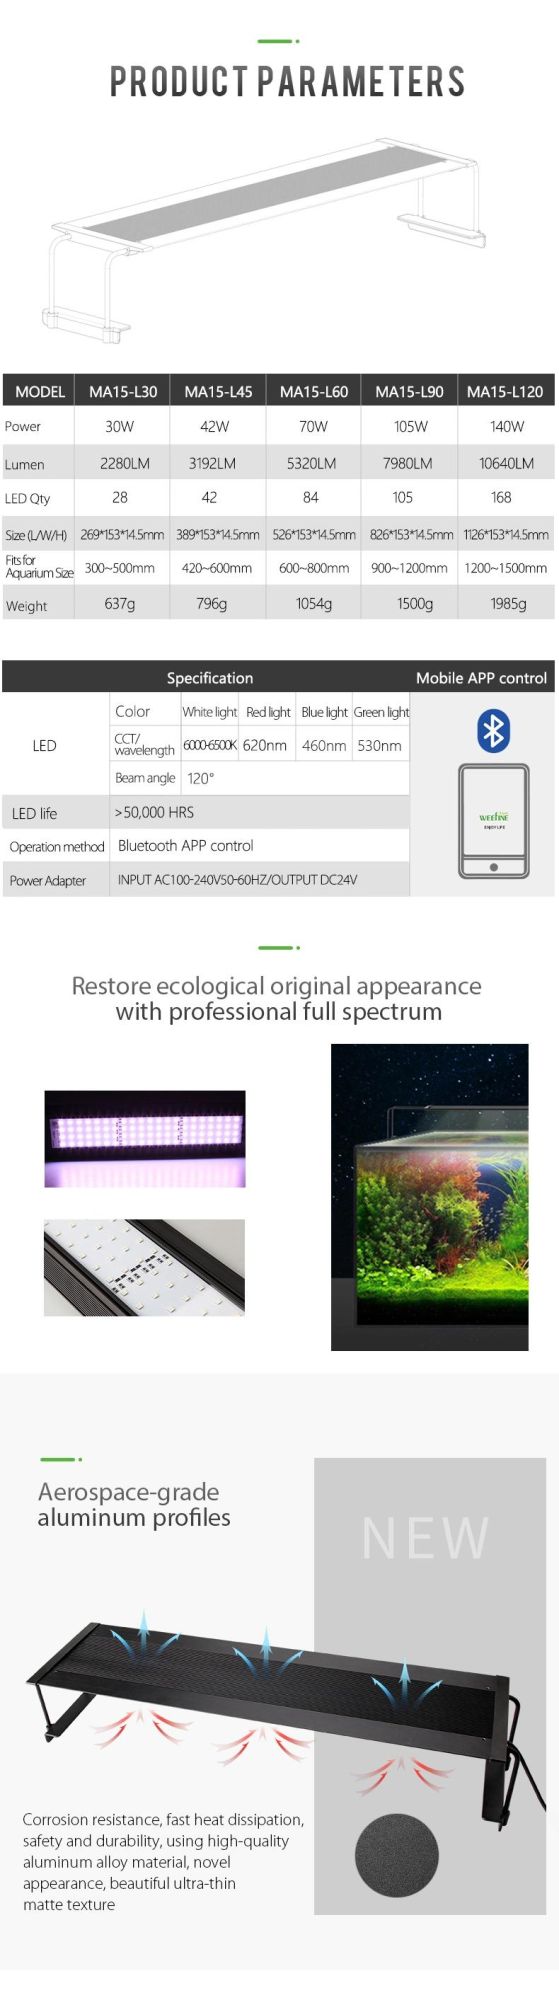 105W Wrgb Customized LED Aquarium Lights for Ultra-Thin Body Design (MA15)